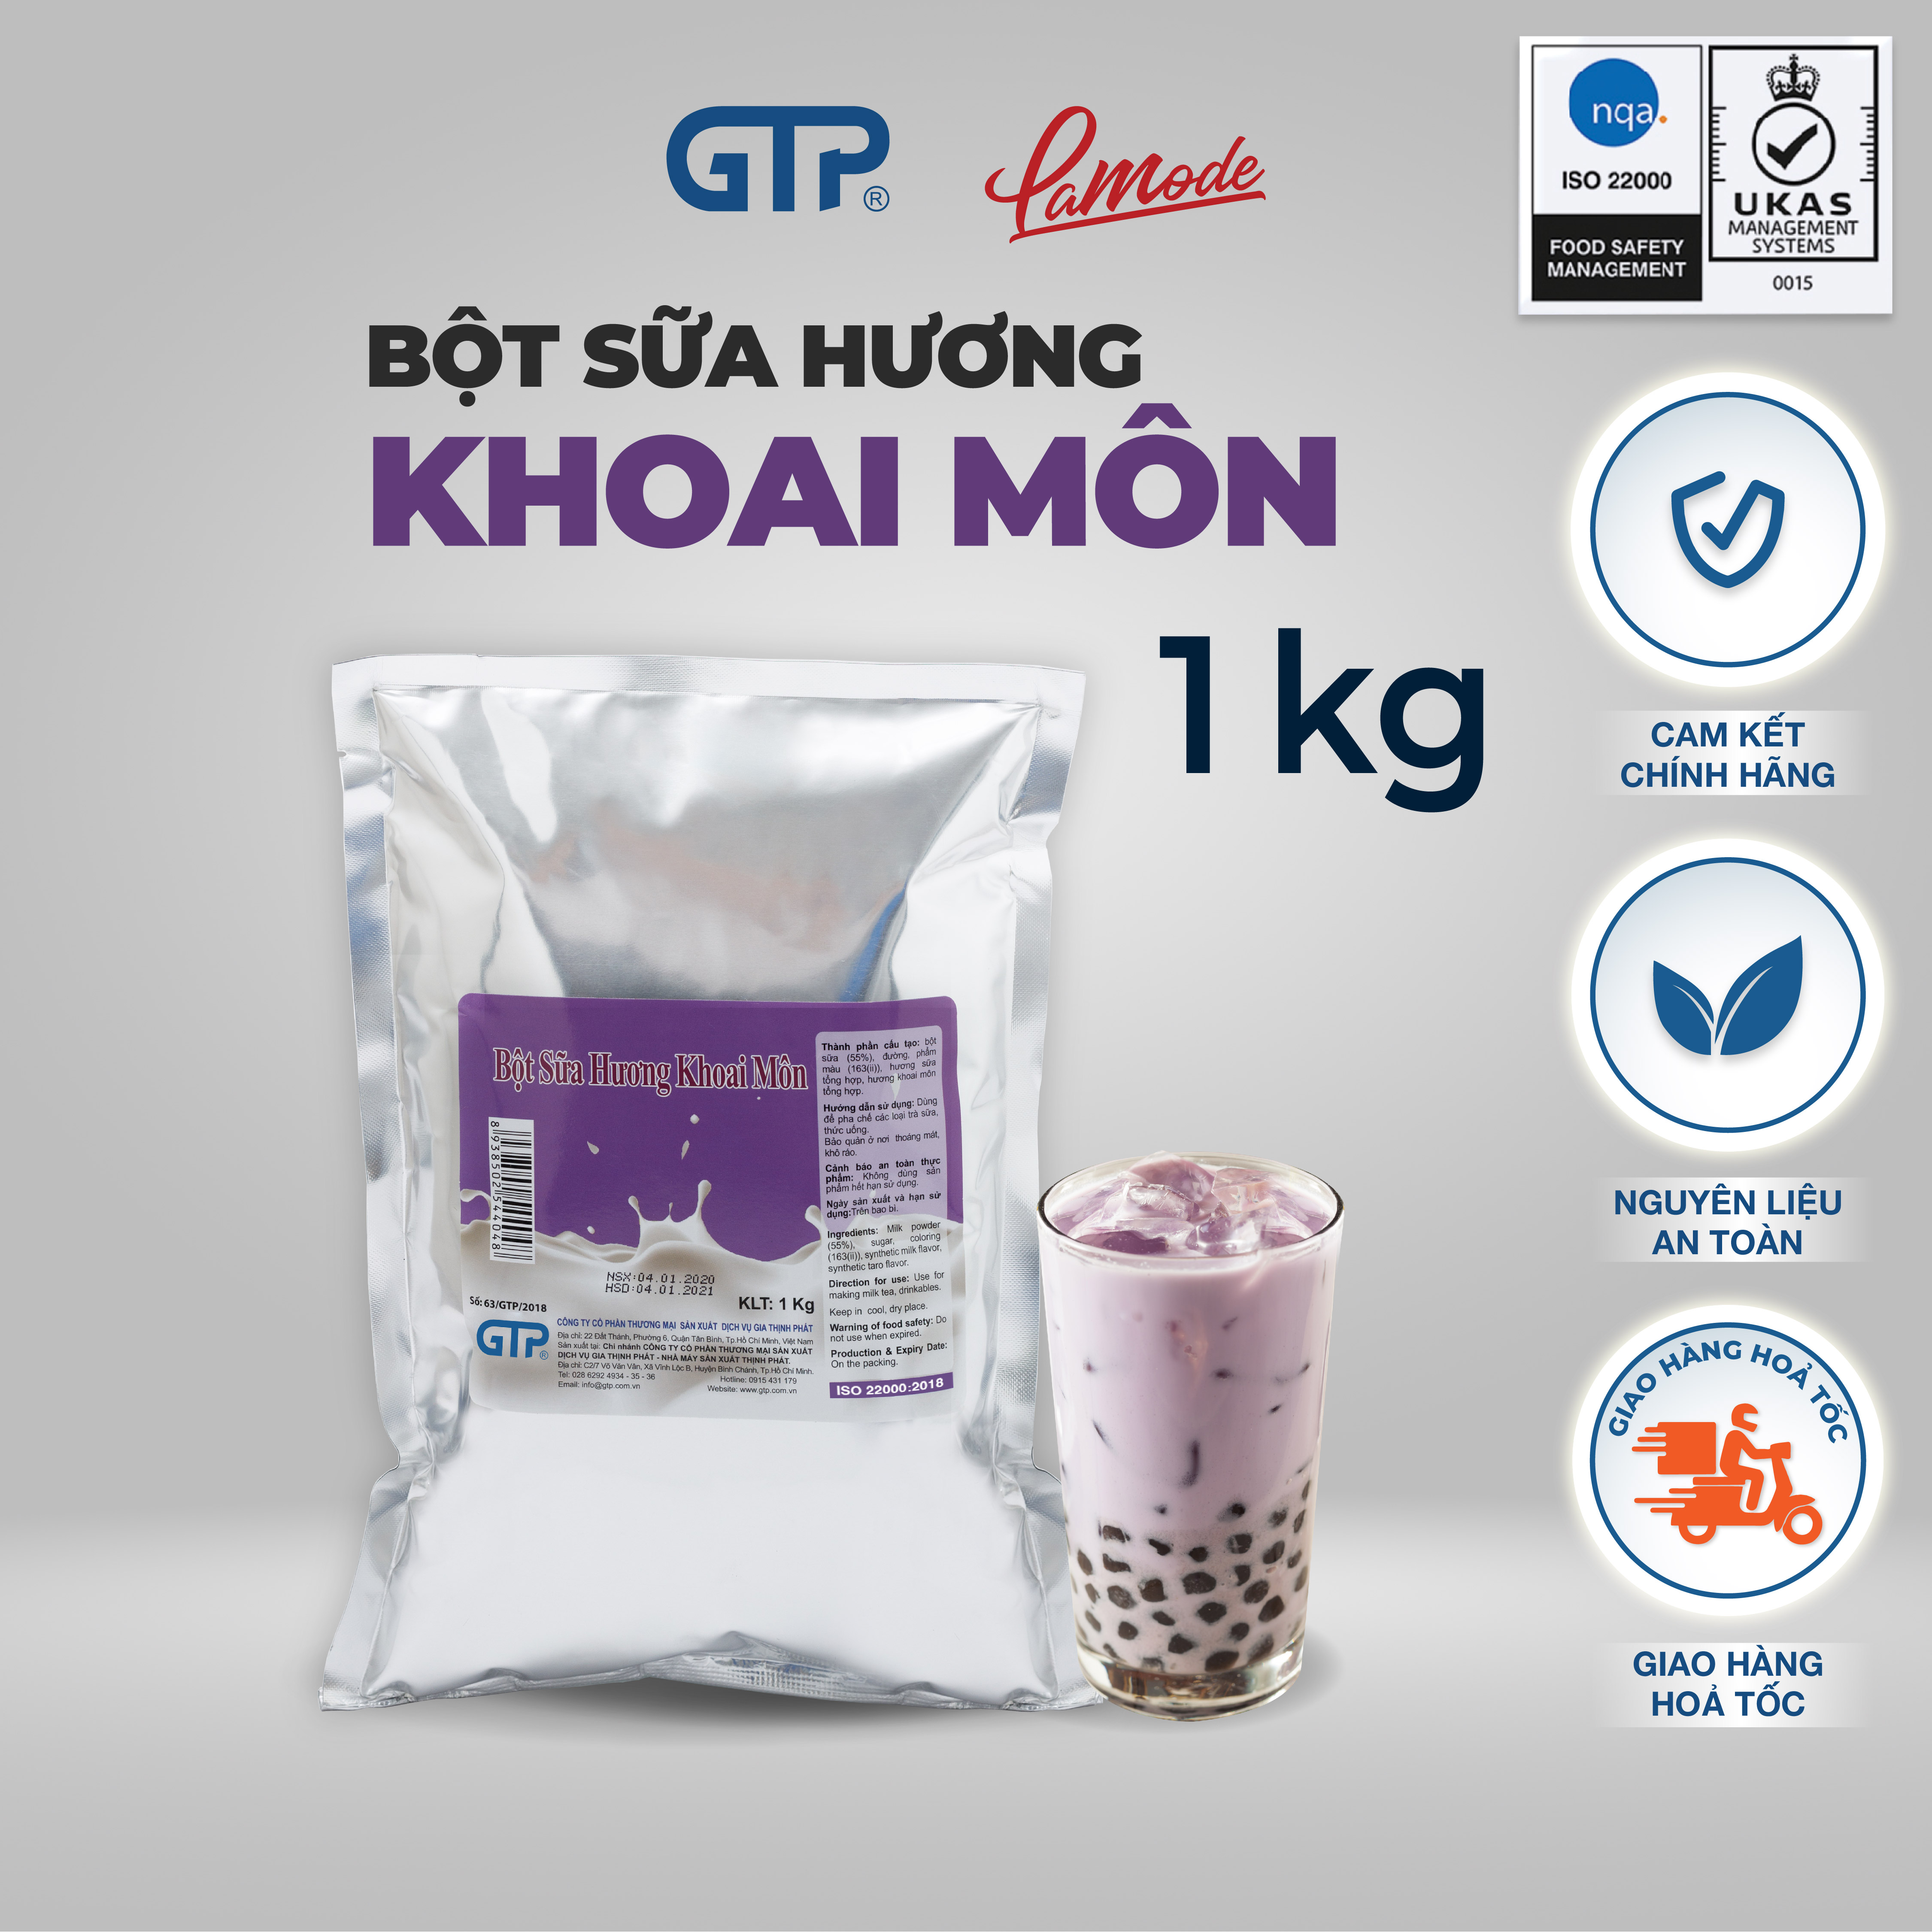 Bột sữa pha trà sữa Khoai môn GTP 1KG - Thơm ngon tự nhiên - SP Chính Hãng